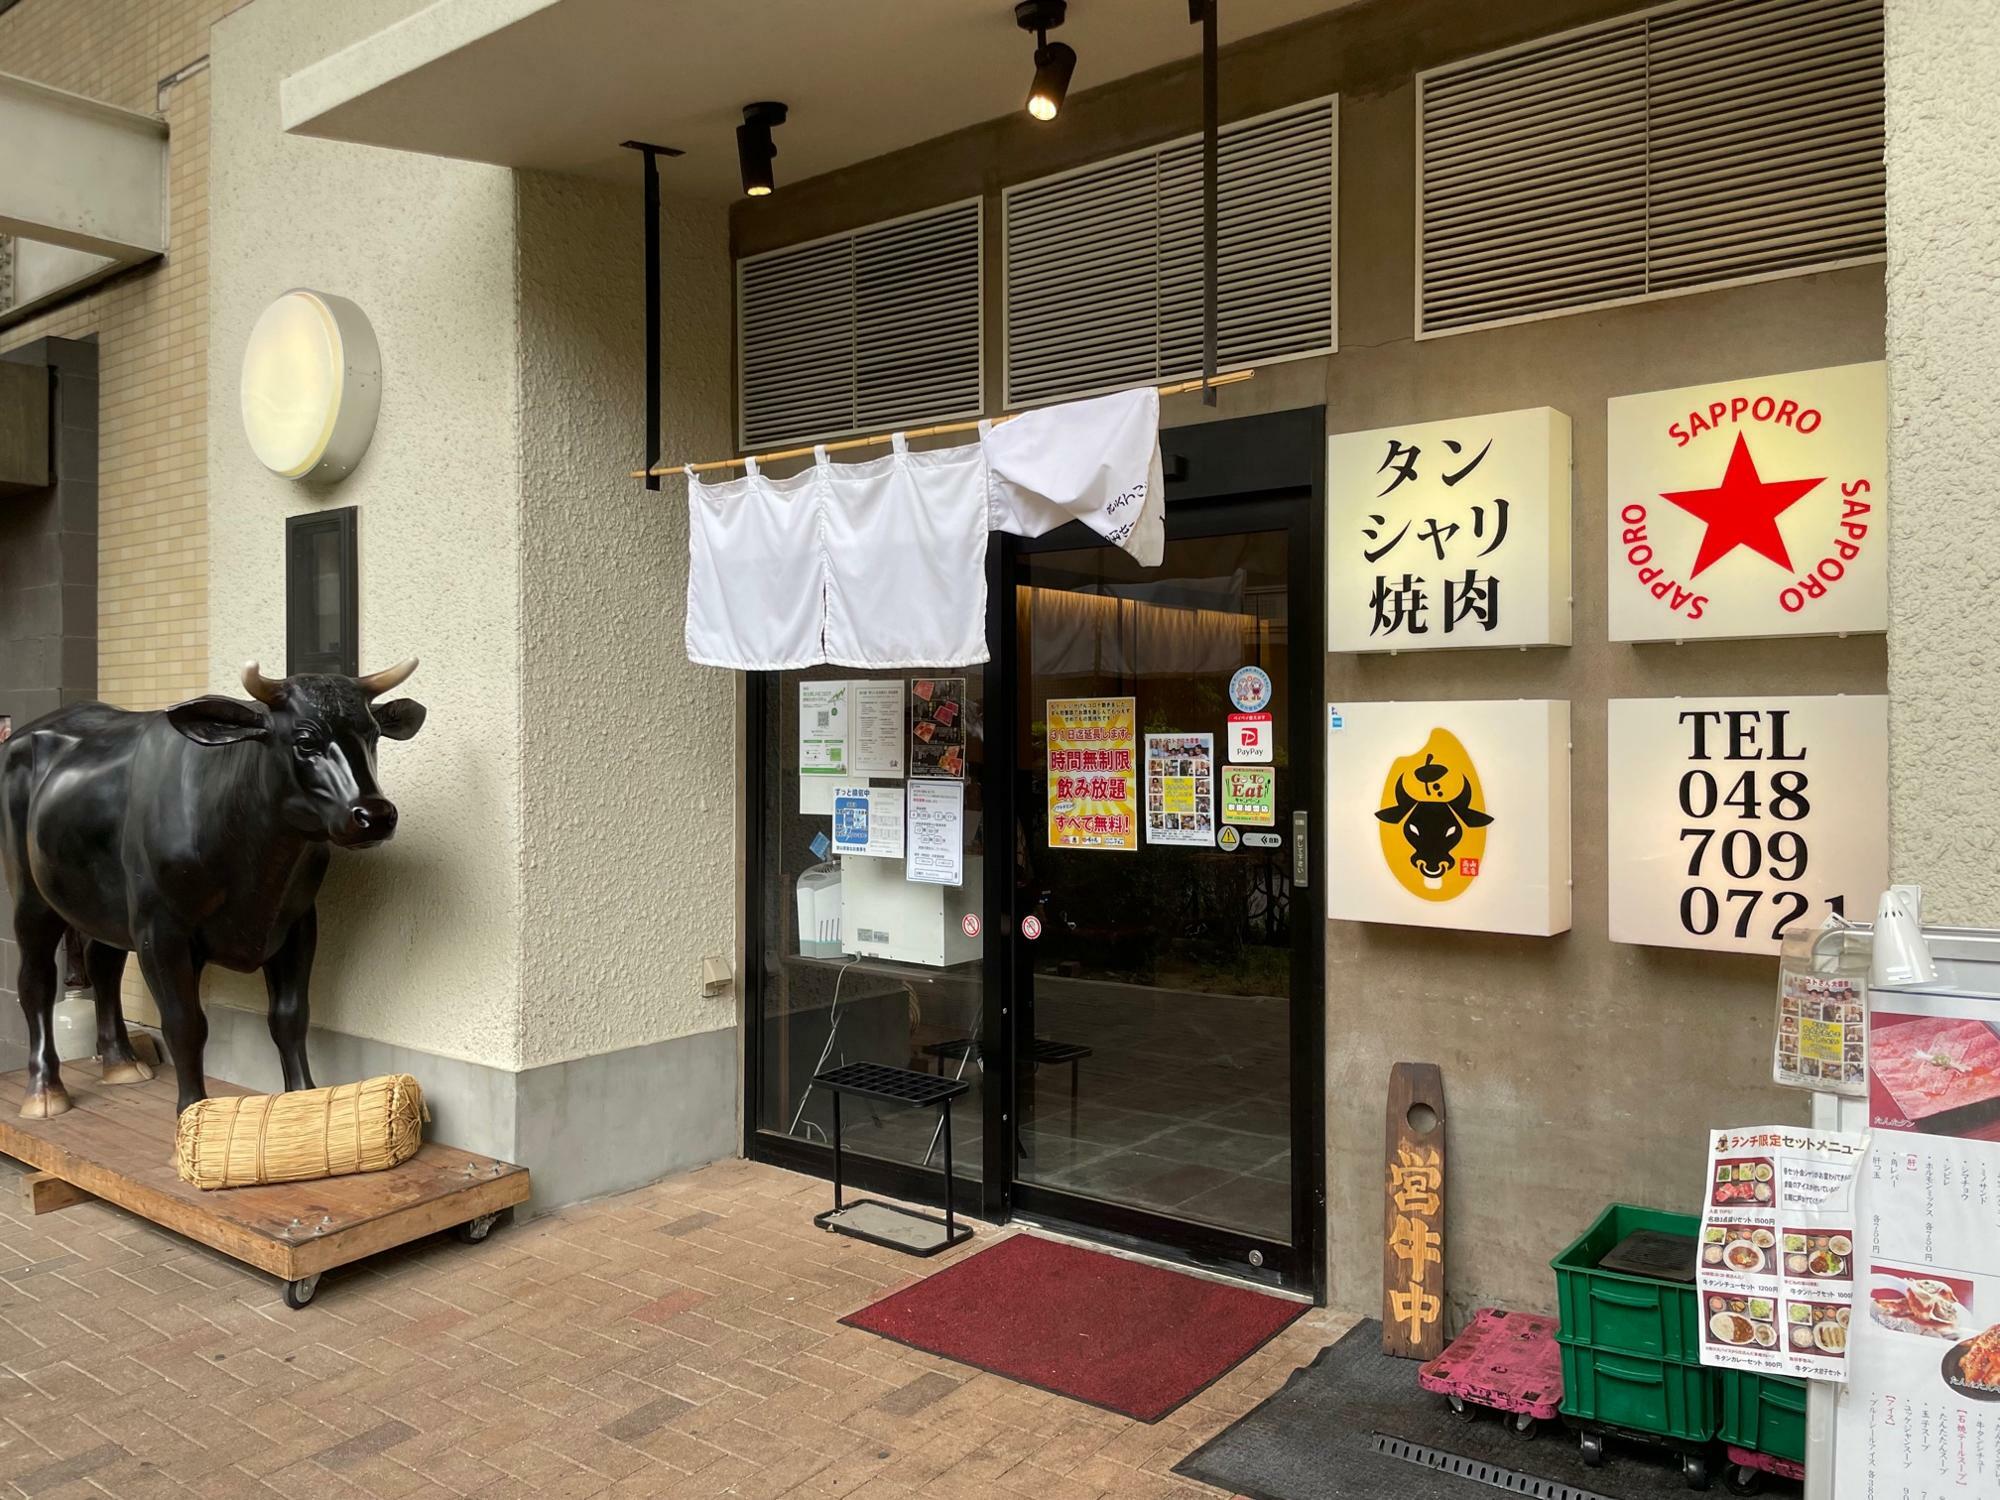 武蔵浦和駅高架線下の武蔵浦和 味の散歩道にお店を構える